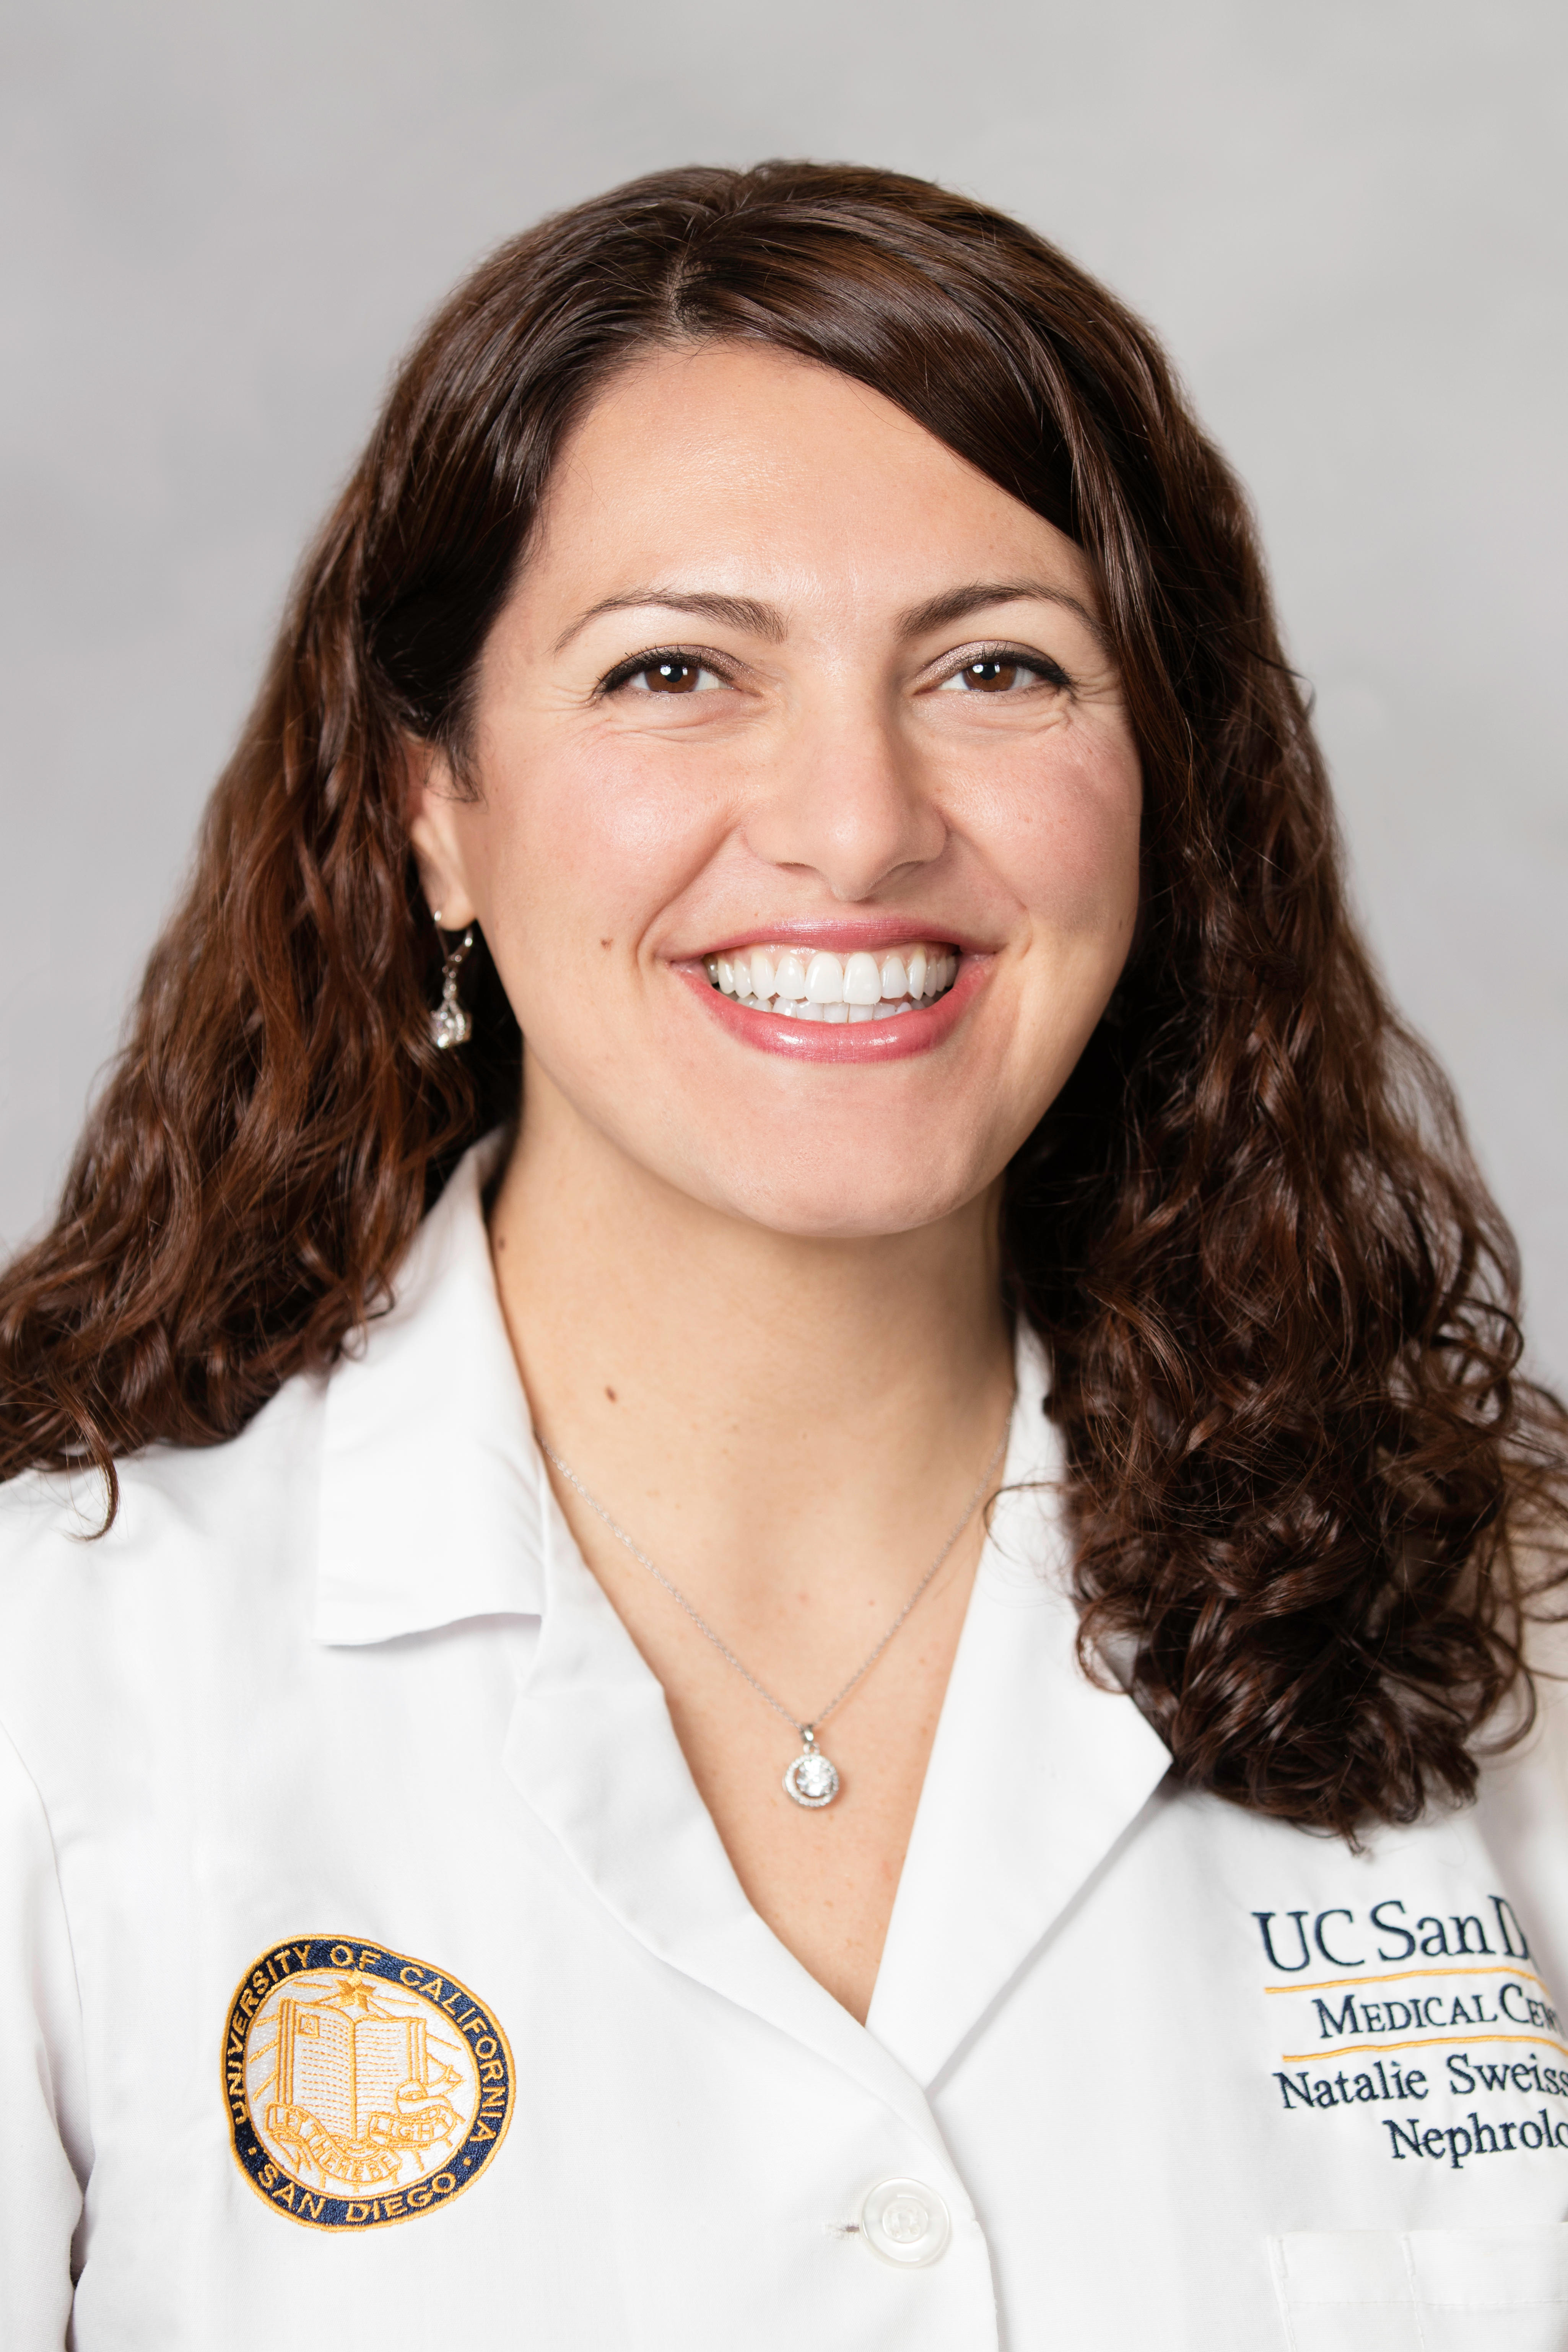 Dr. Natalie Sweiss, MD